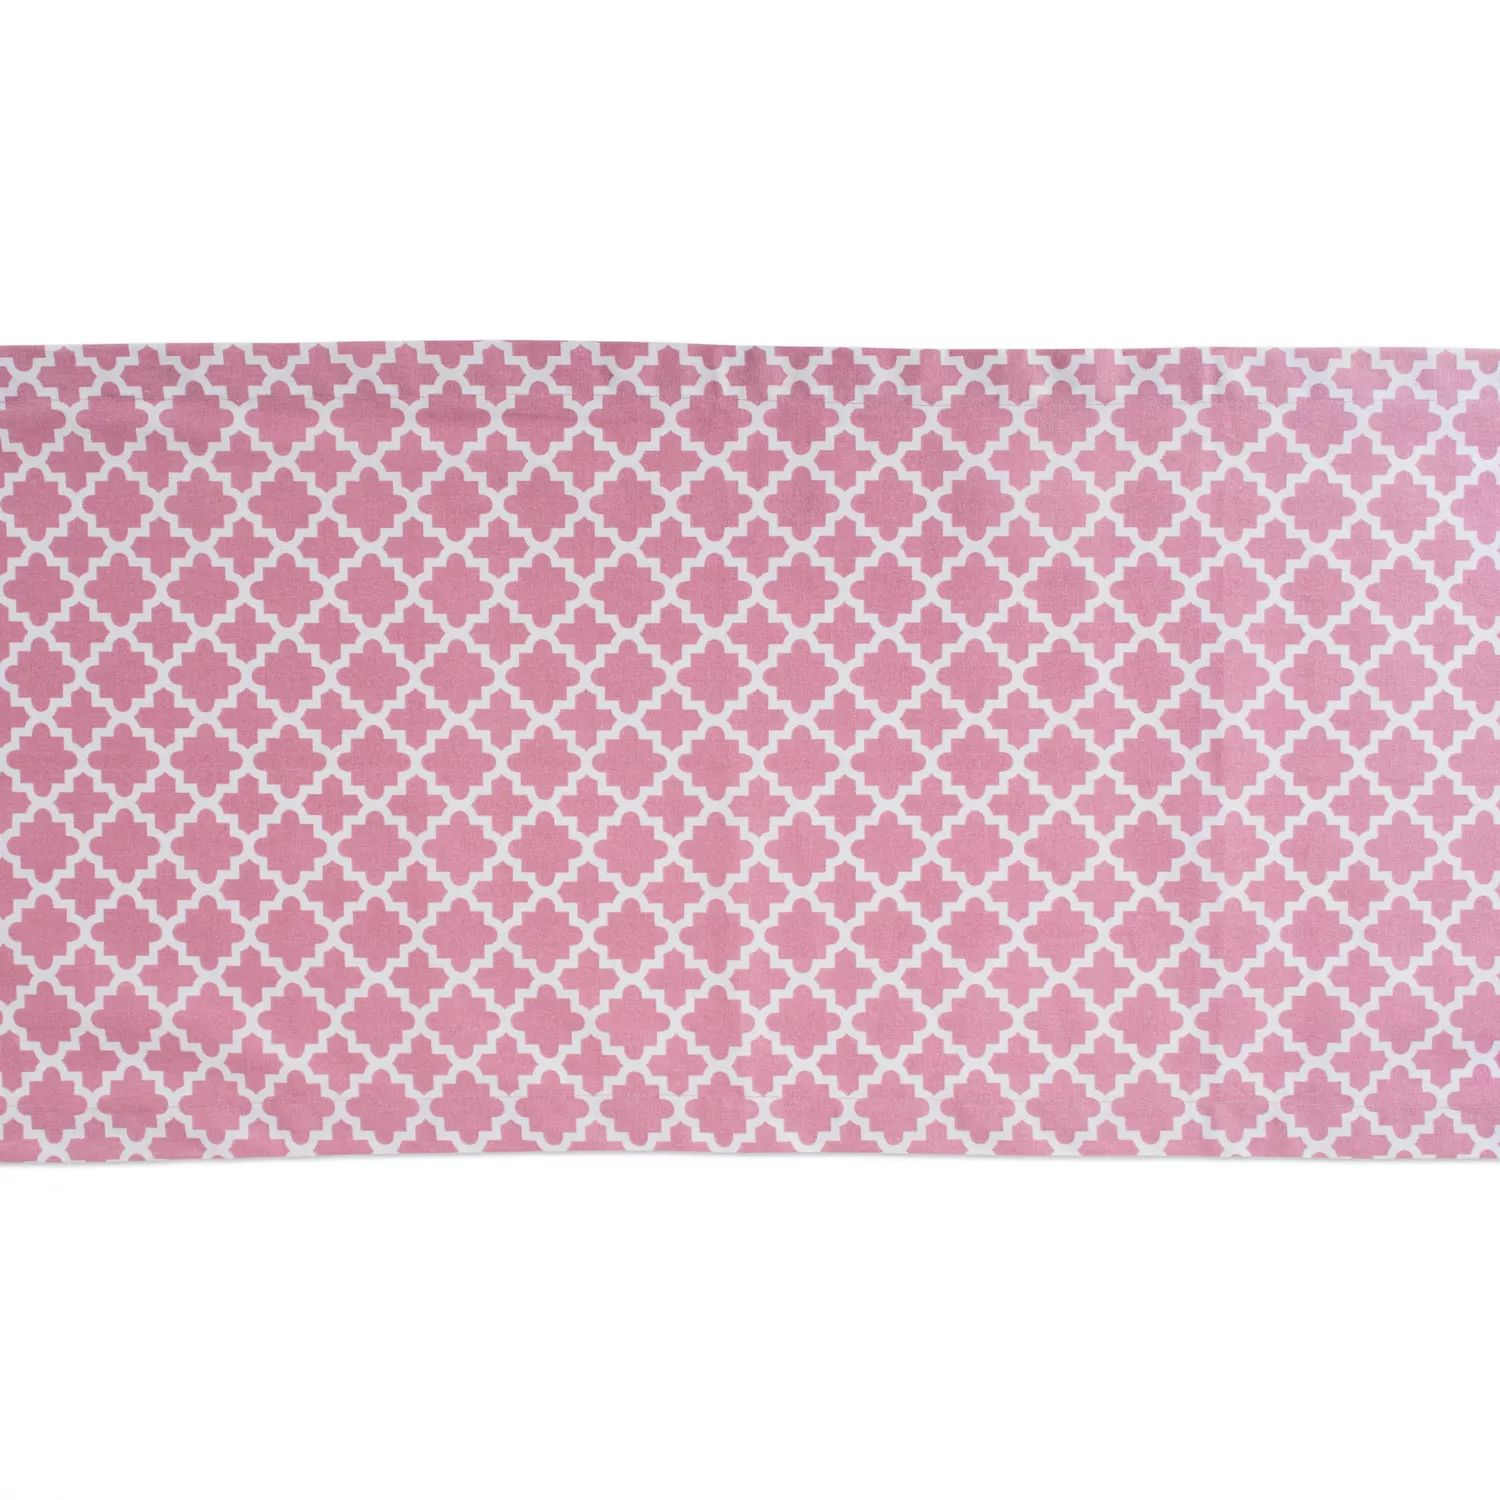 Марокканская прямоугольная дорожка для стола 108 дюймов, розовая и белая